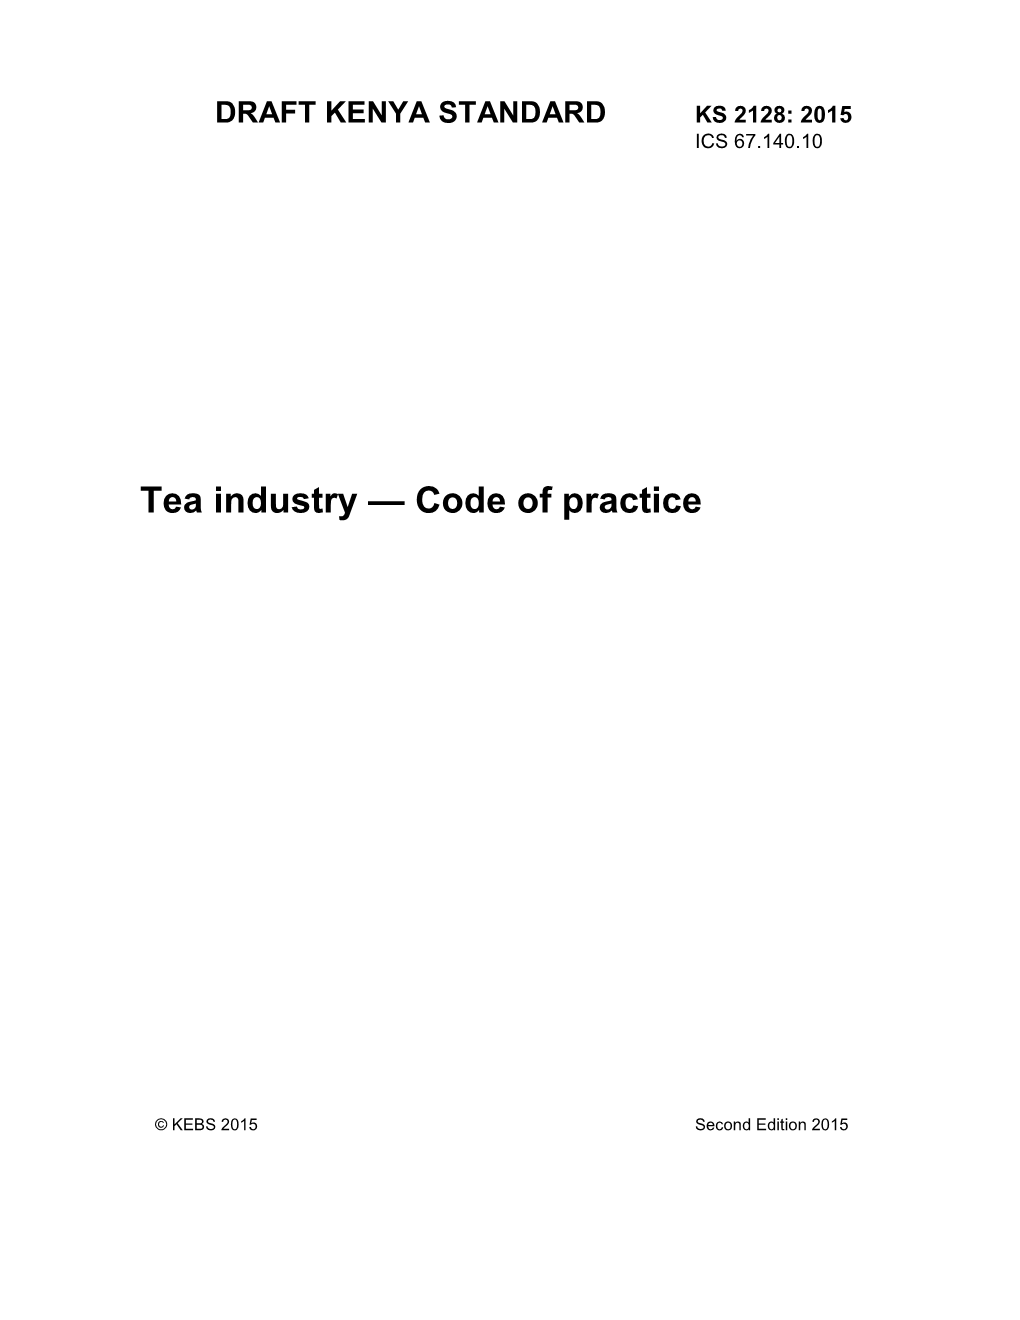 Tea Industry — Code of Practice